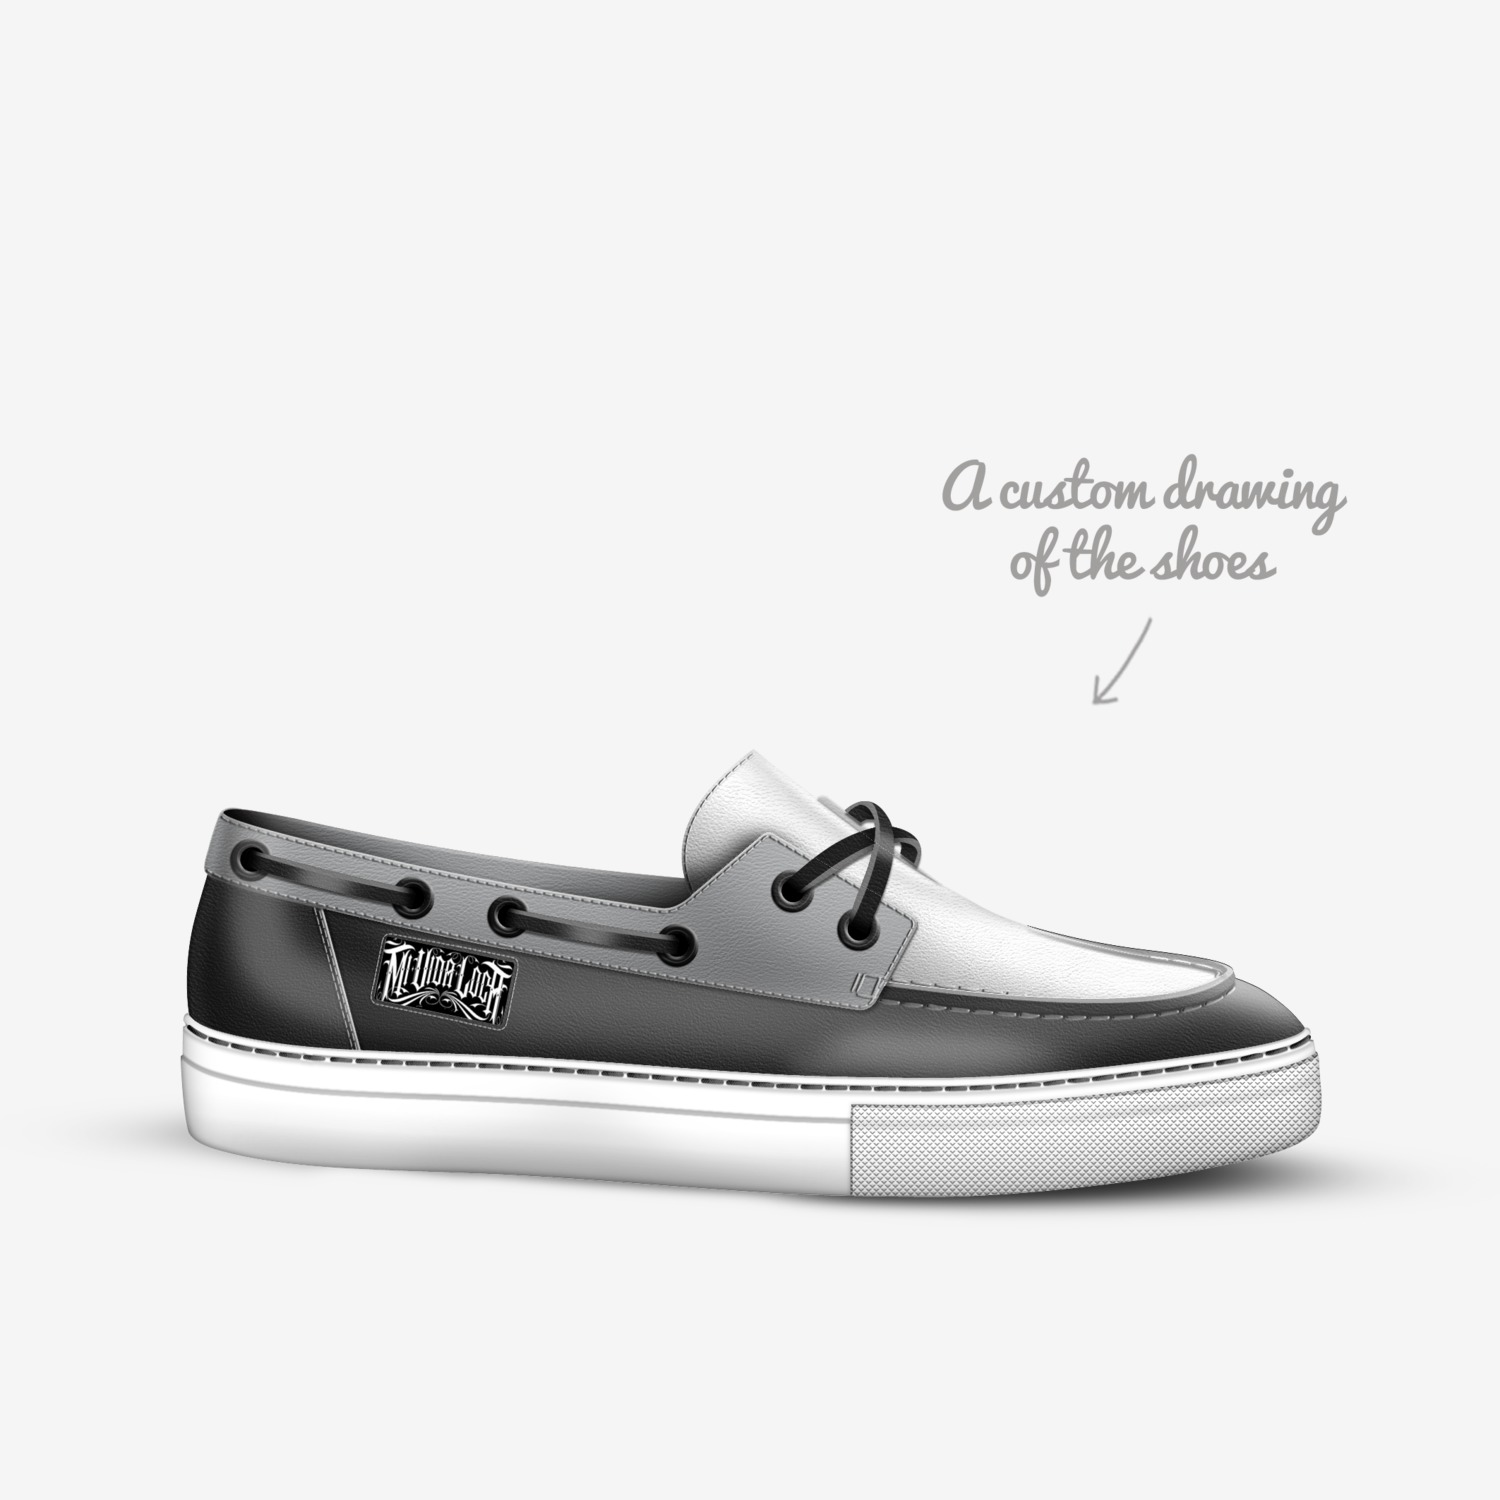 Mi Vida Loca A Custom Shoe Concept By Michele Madella